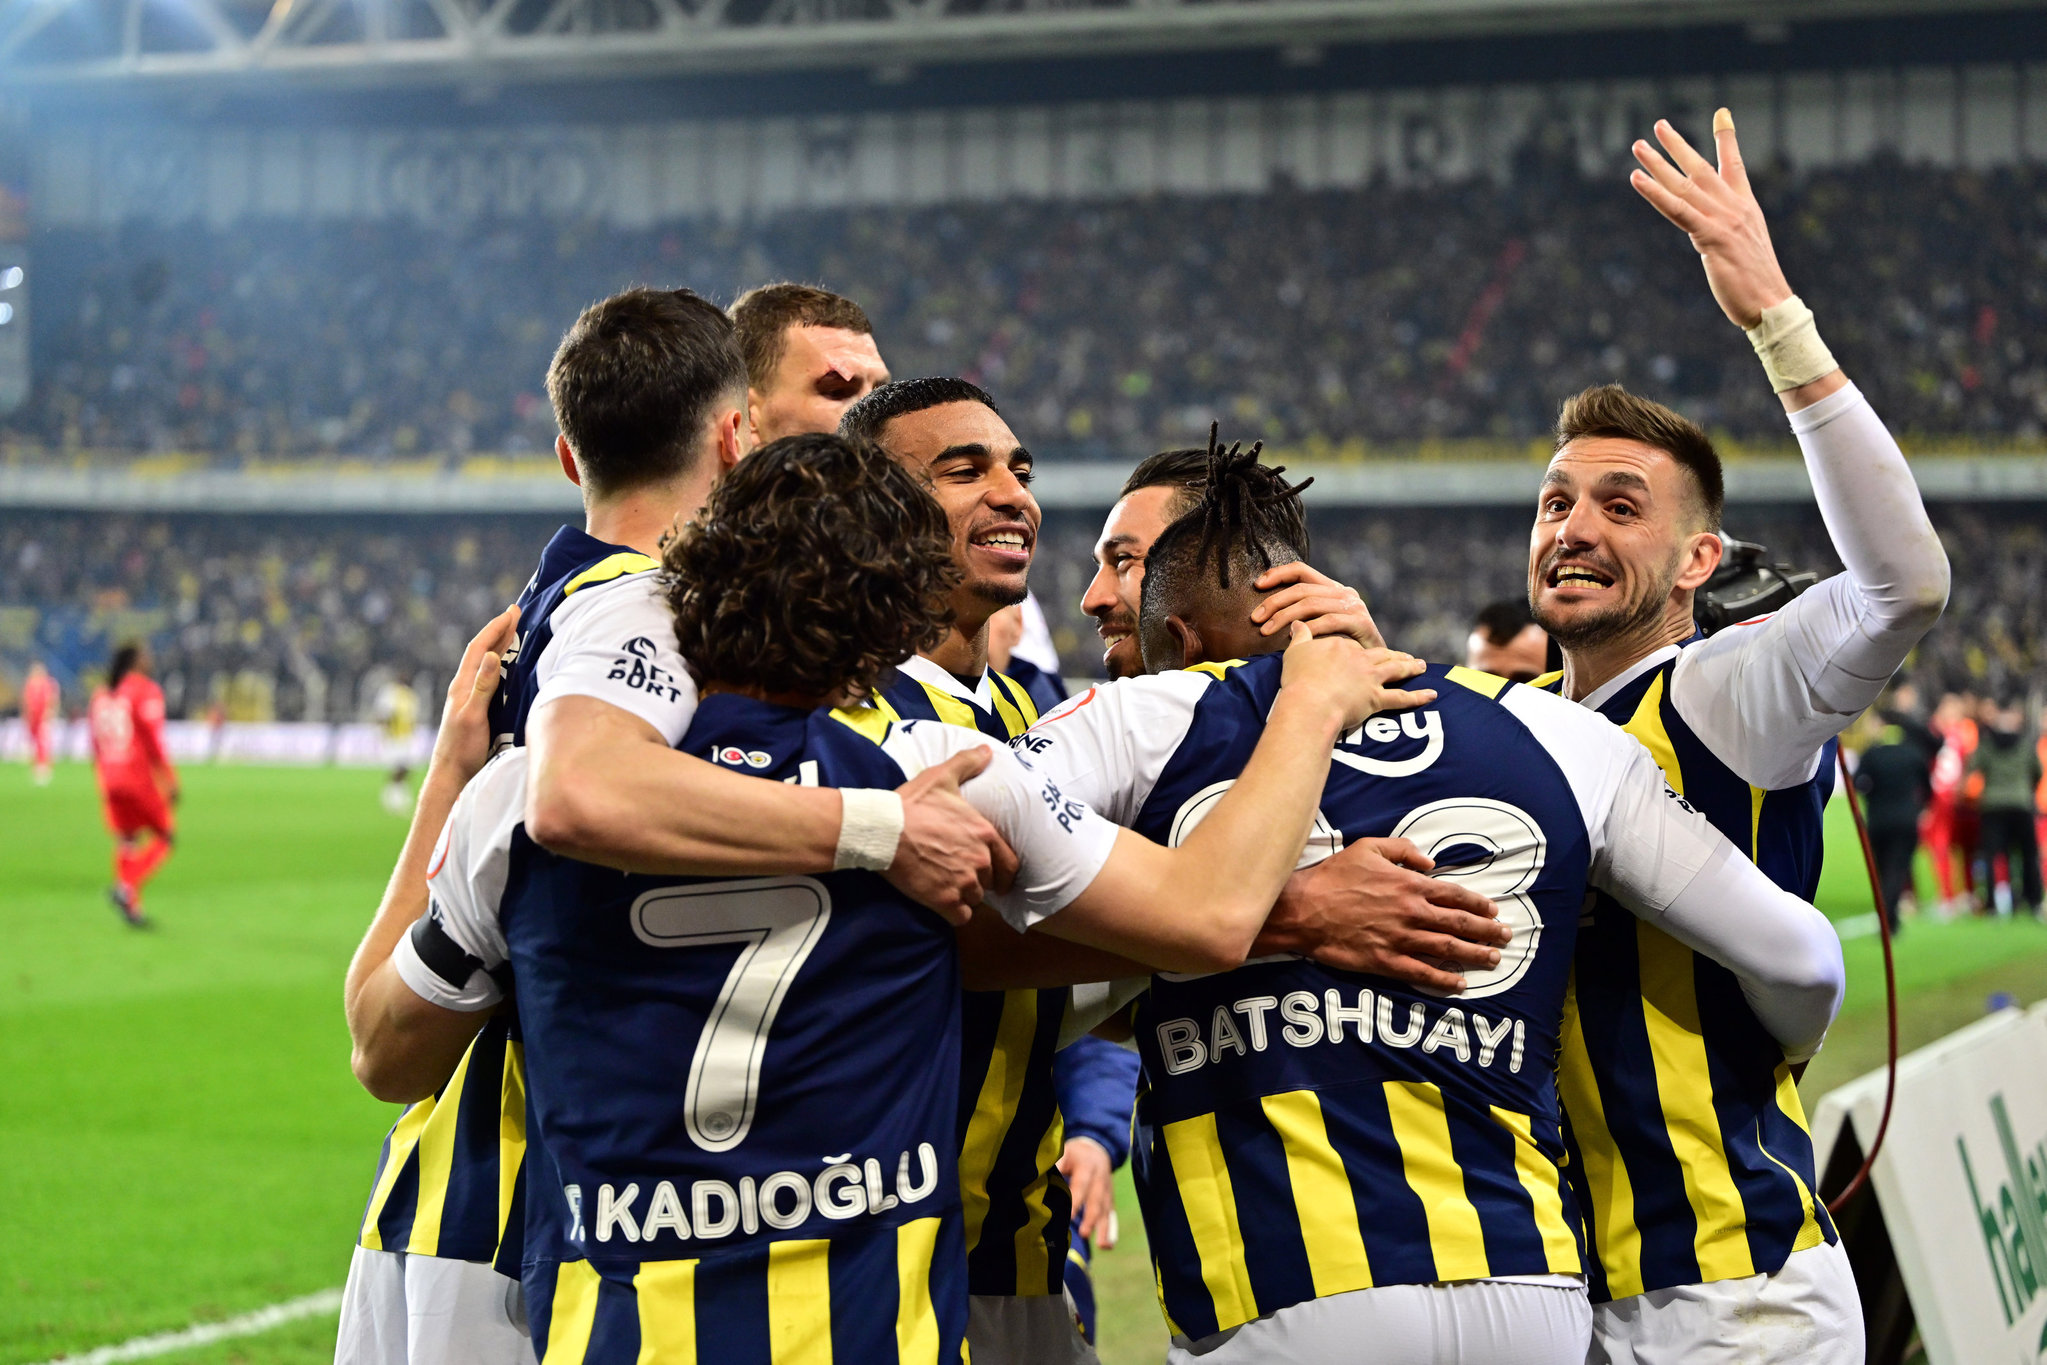 Spor yazarları Fenerbahçe - Siltaş Yapı Pendikspor maçını yorumladı